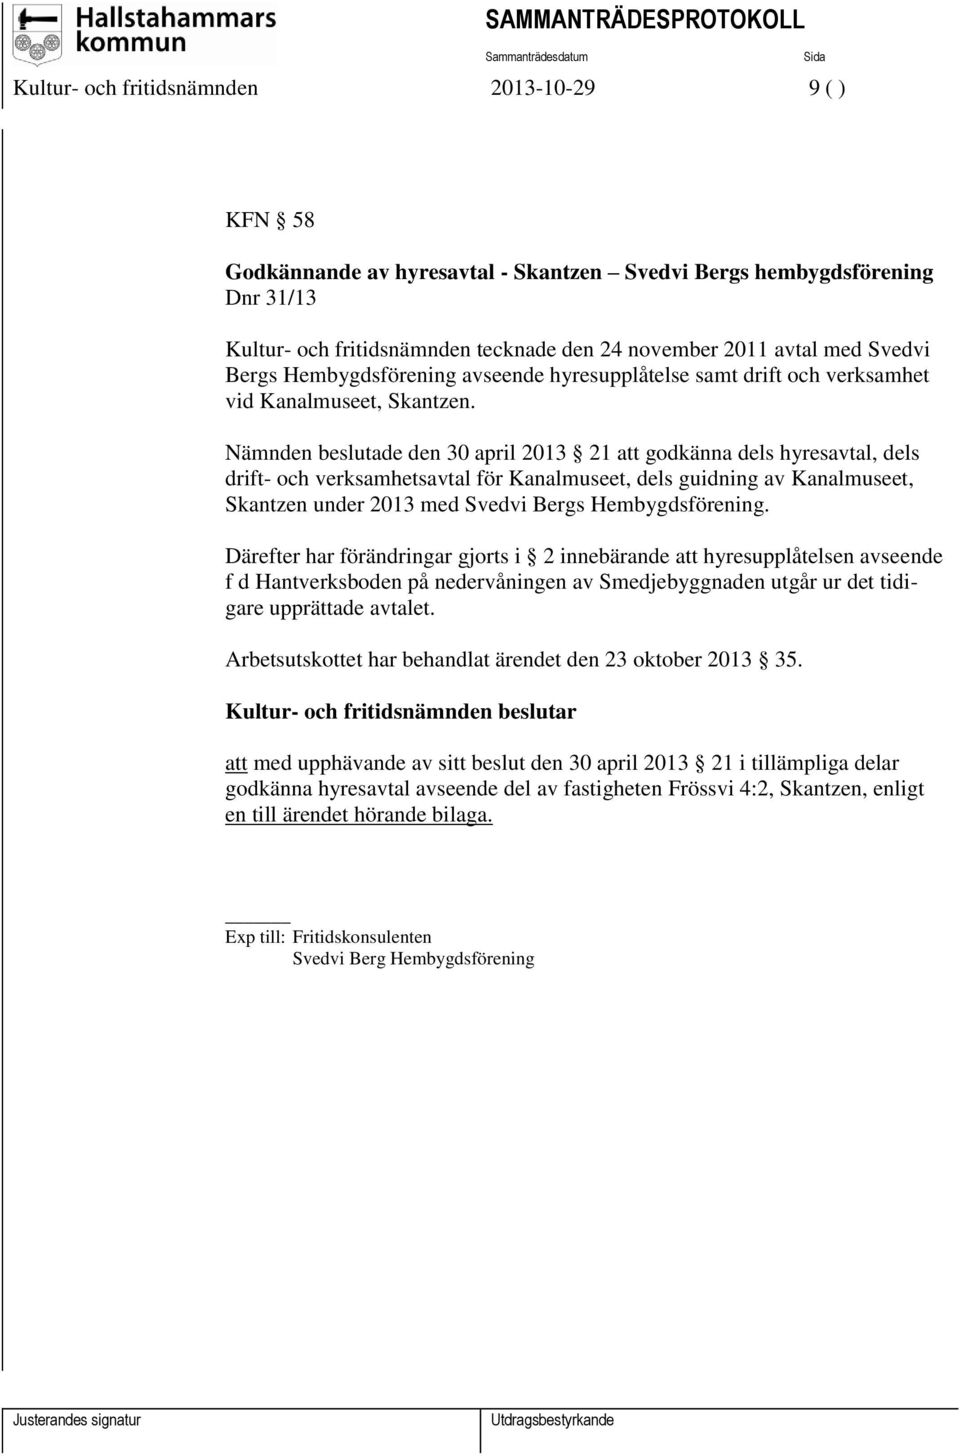 Nämnden beslutade den 30 april 2013 21 att godkänna dels hyresavtal, dels drift- och verksamhetsavtal för Kanalmuseet, dels guidning av Kanalmuseet, Skantzen under 2013 med Svedvi Bergs